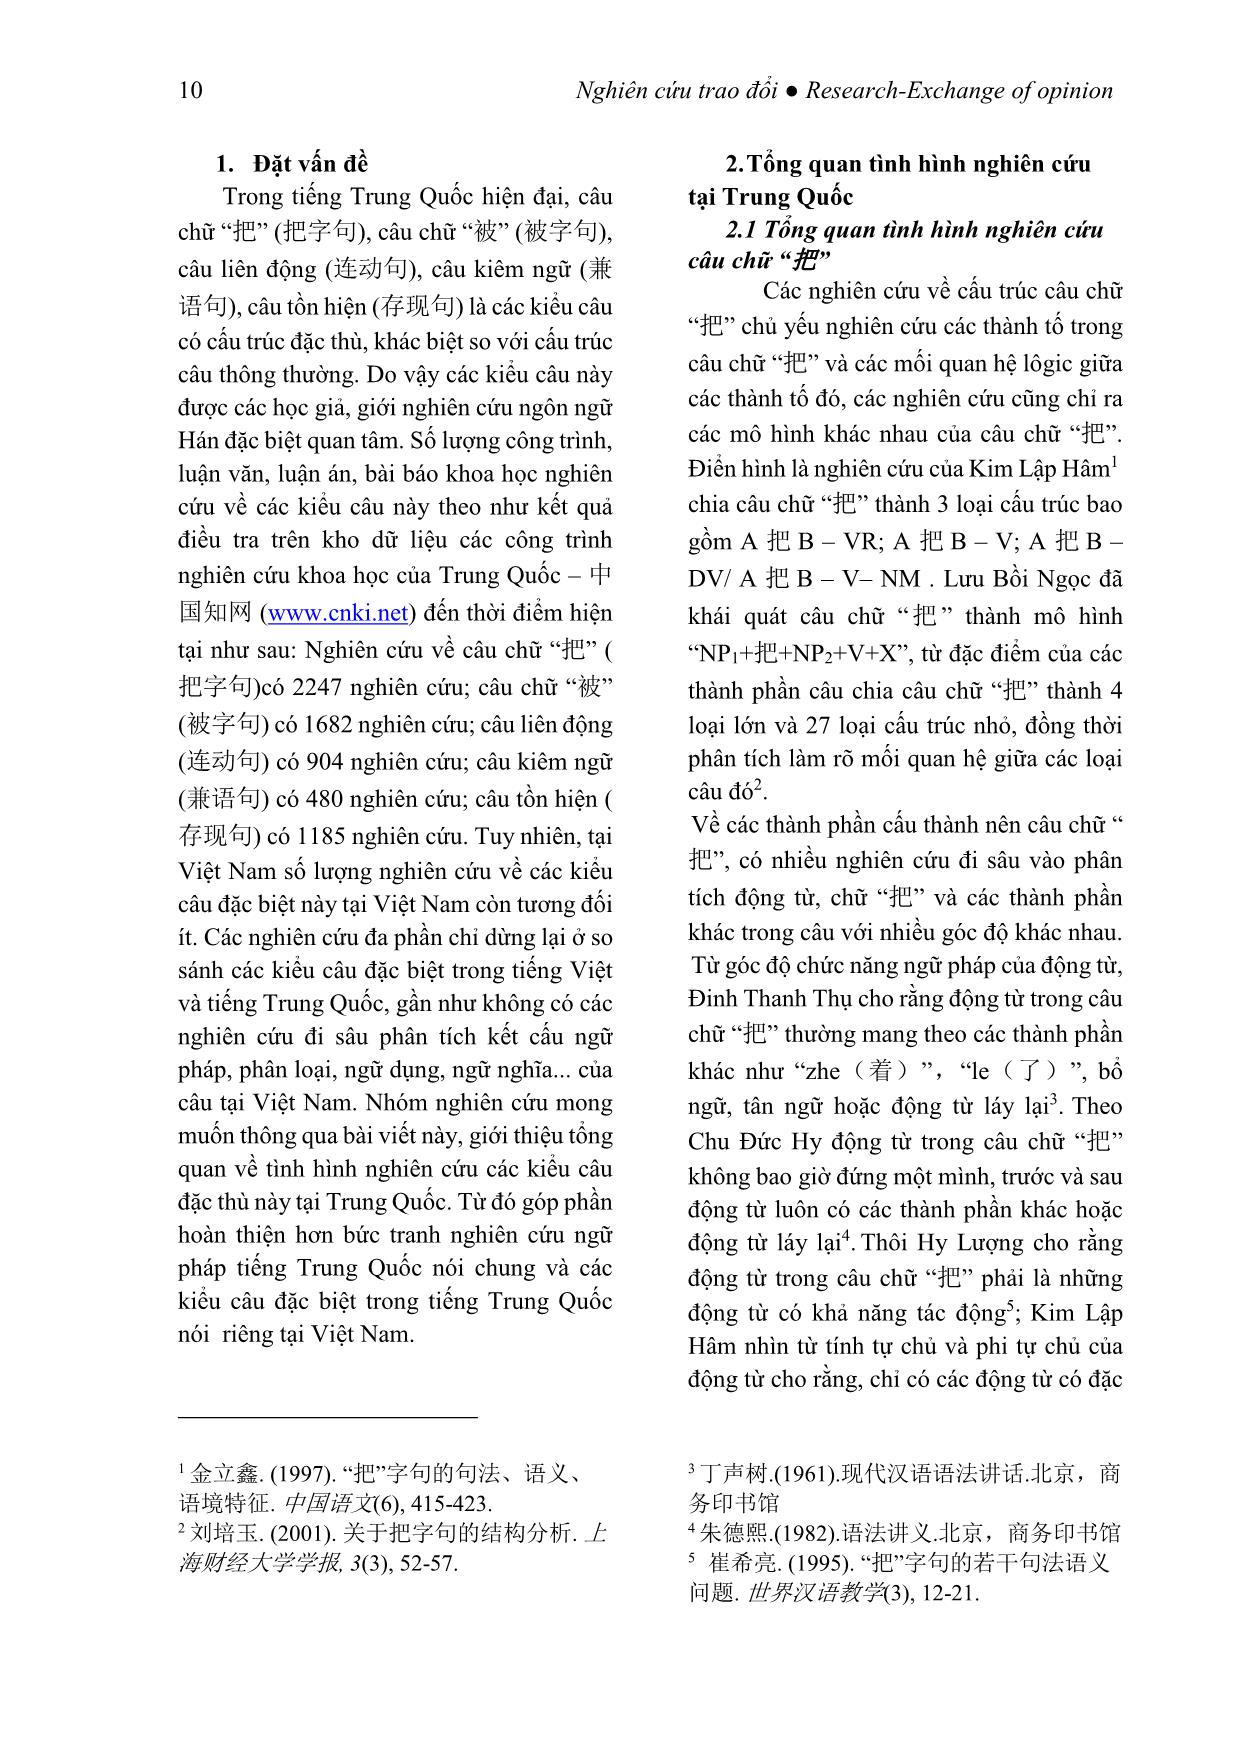 Tình hình nghiên cứu các kiểu câu đặc biệt trong tiếng Trung Quốc tại Trung Quốc trang 2